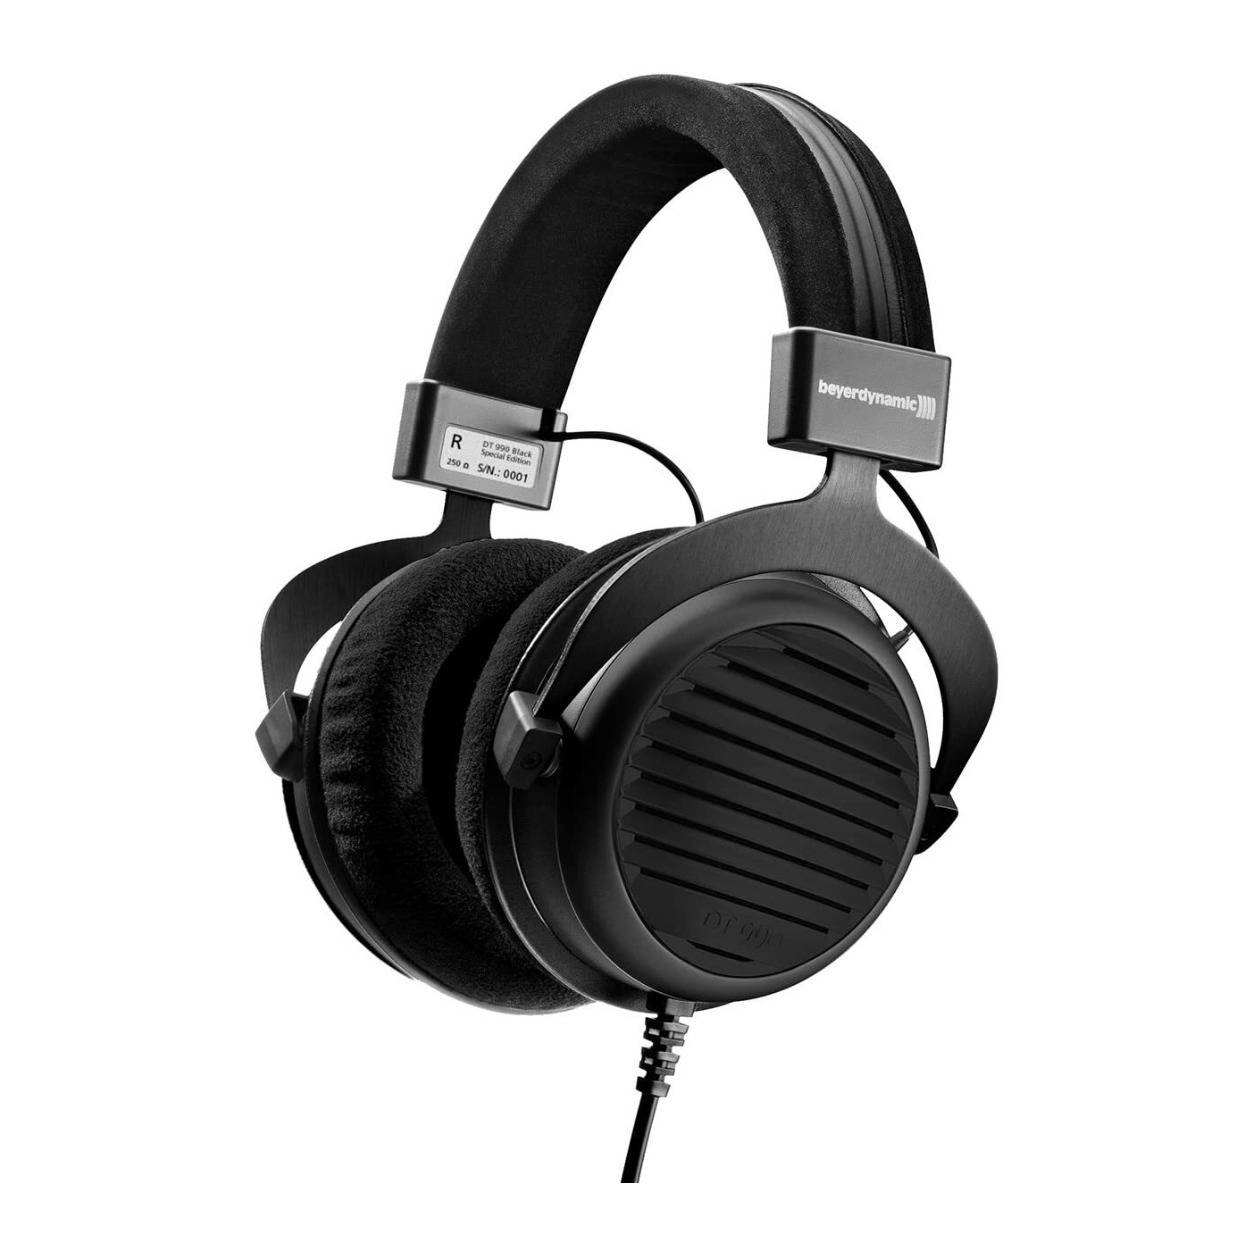 Beyerdynamic DT 990 Premium Open-Back Over-Ear Hi-Fi Stereo Headphones (Black)